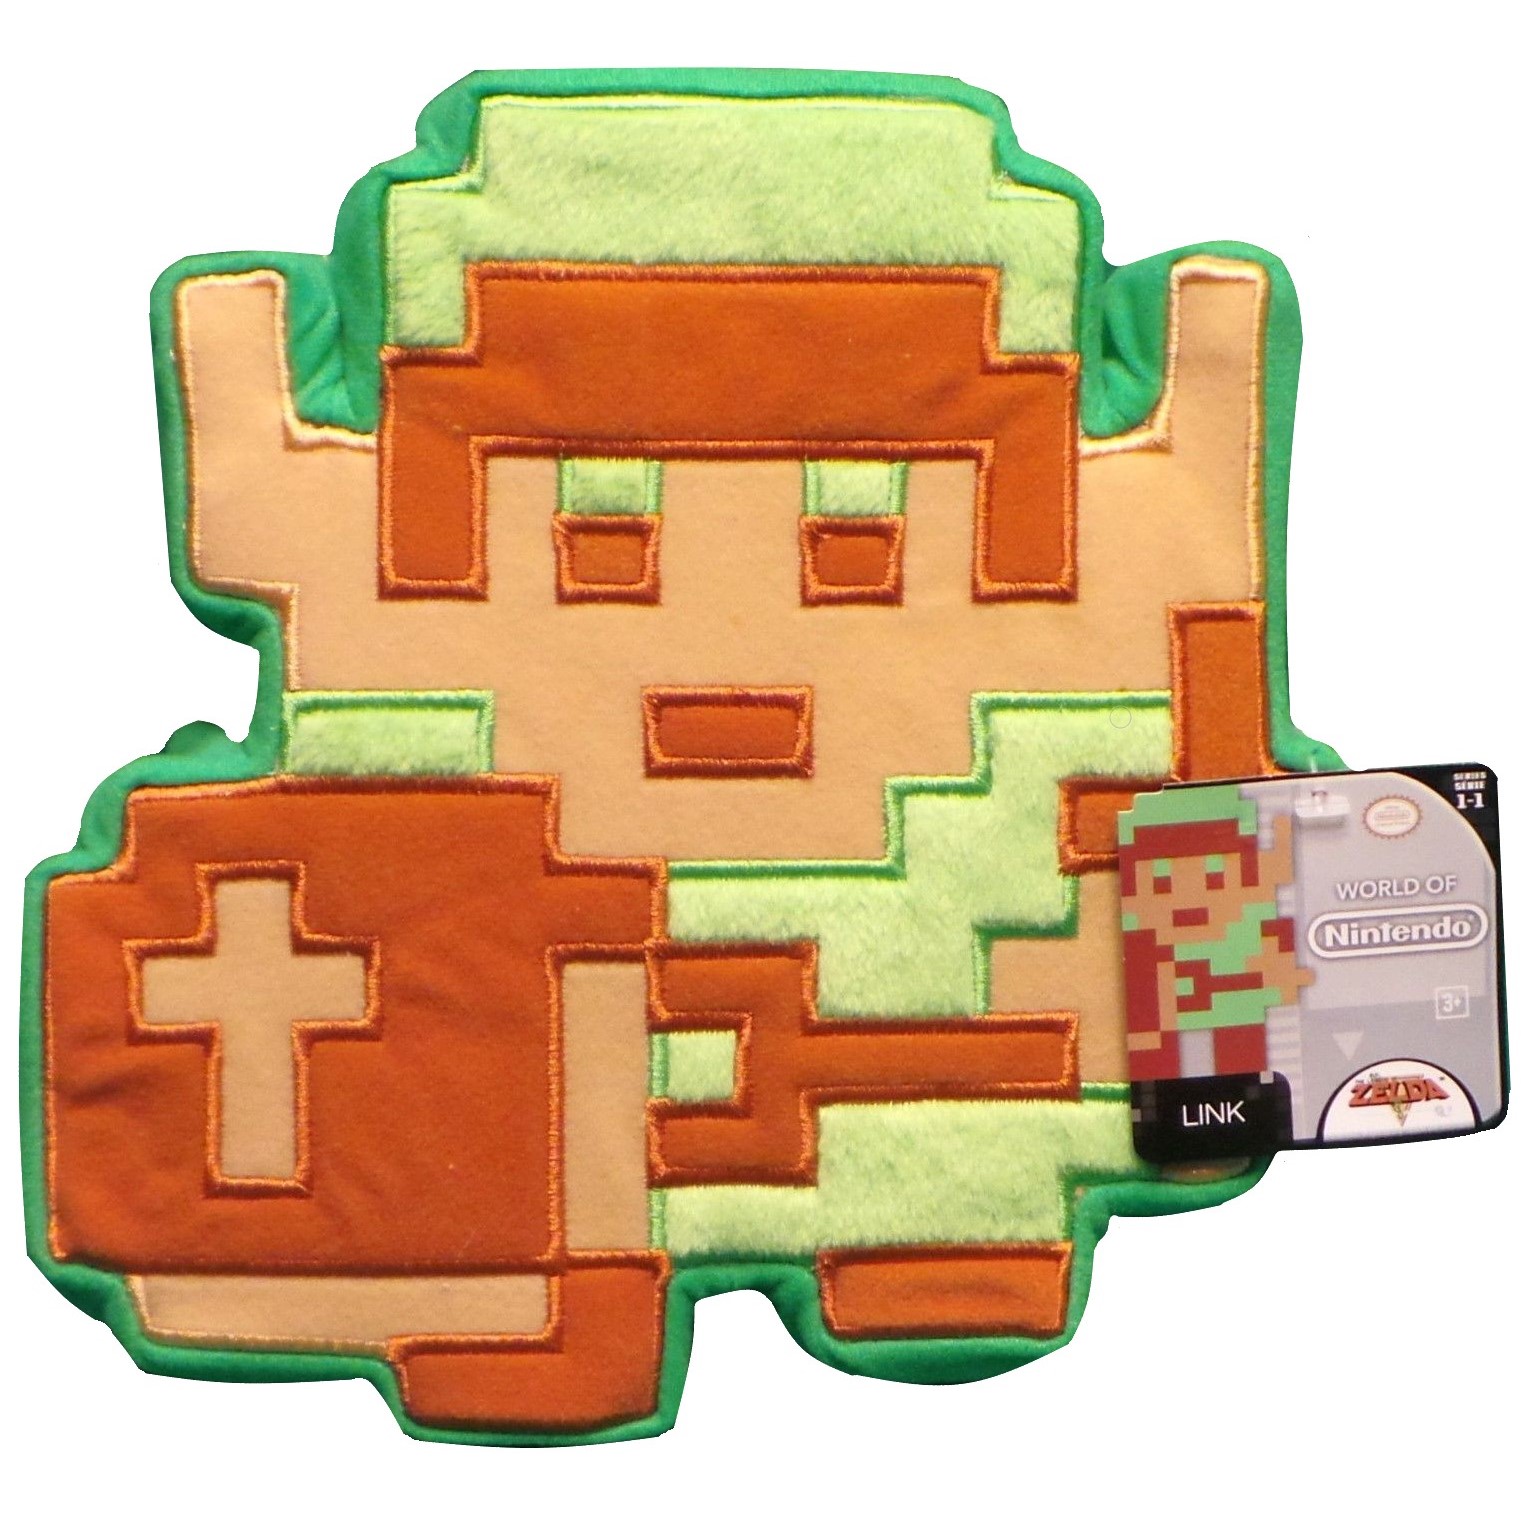 World of Nintendo Link 8-Bit Plush by Jakks Pacific, USA 2015.